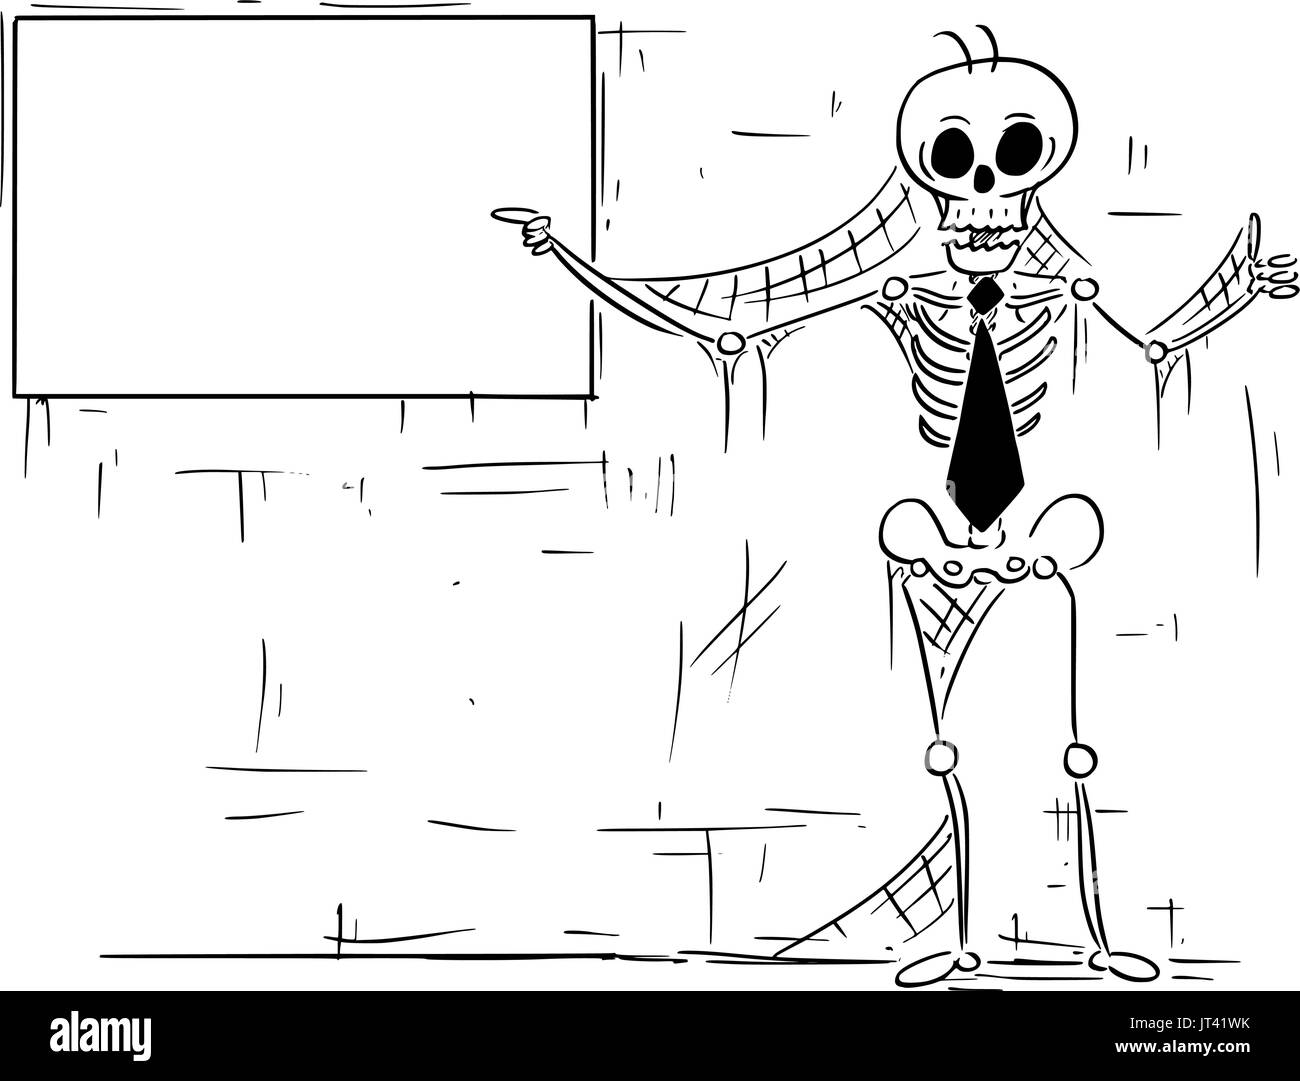 Comic-Illustration des menschlichen Skeletts tot Geschäftsmann, Angestellte, Verkäufer oder Manager auf leere Zeichen zeigen und Daumen hoch Geste zeigt. Stock Vektor